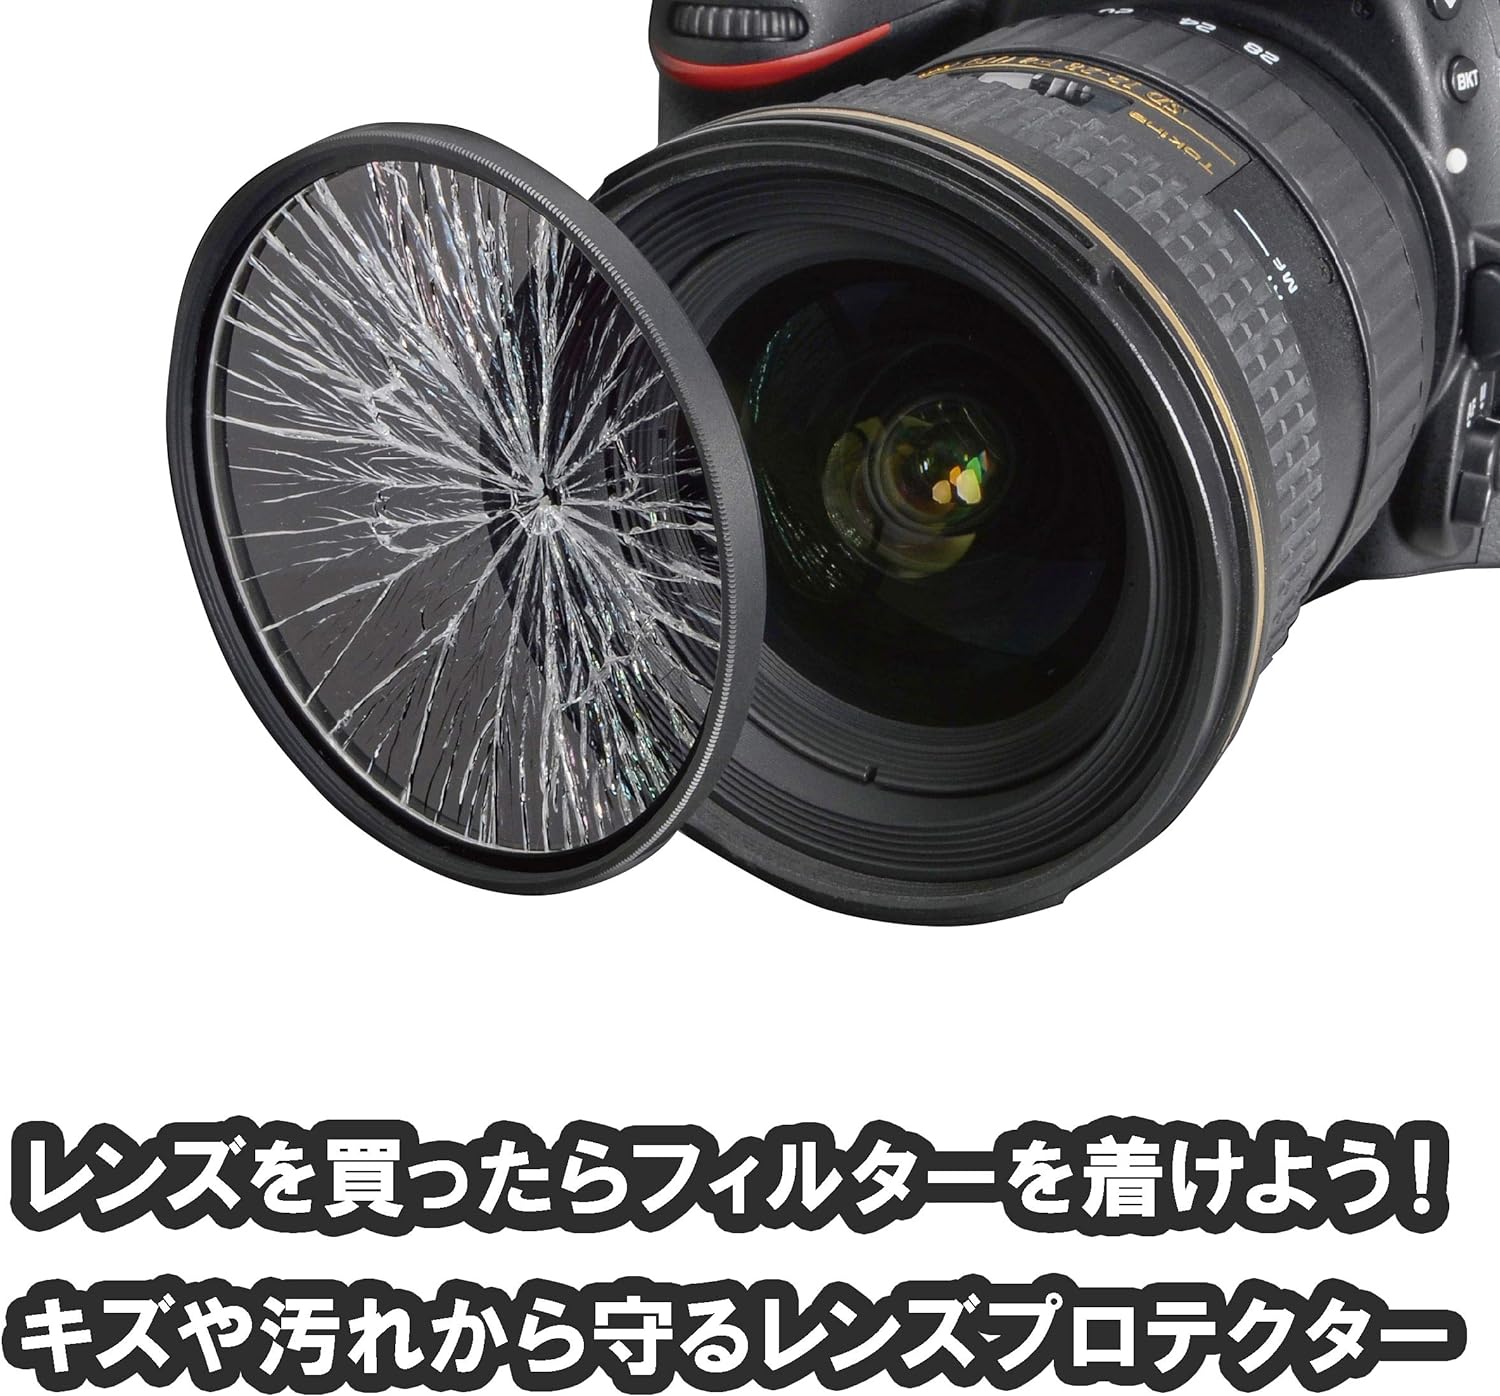 ケンコー 37mm レンズフィルター PRO1D プロテクター